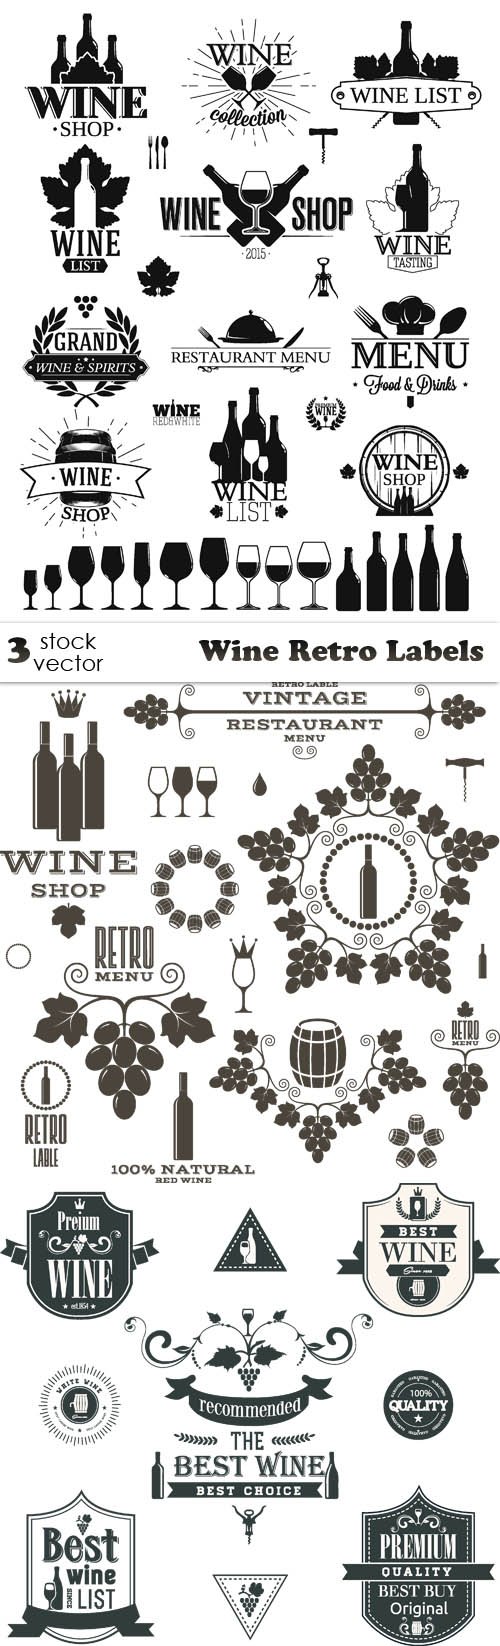 Vectors - Wine Retro Labels